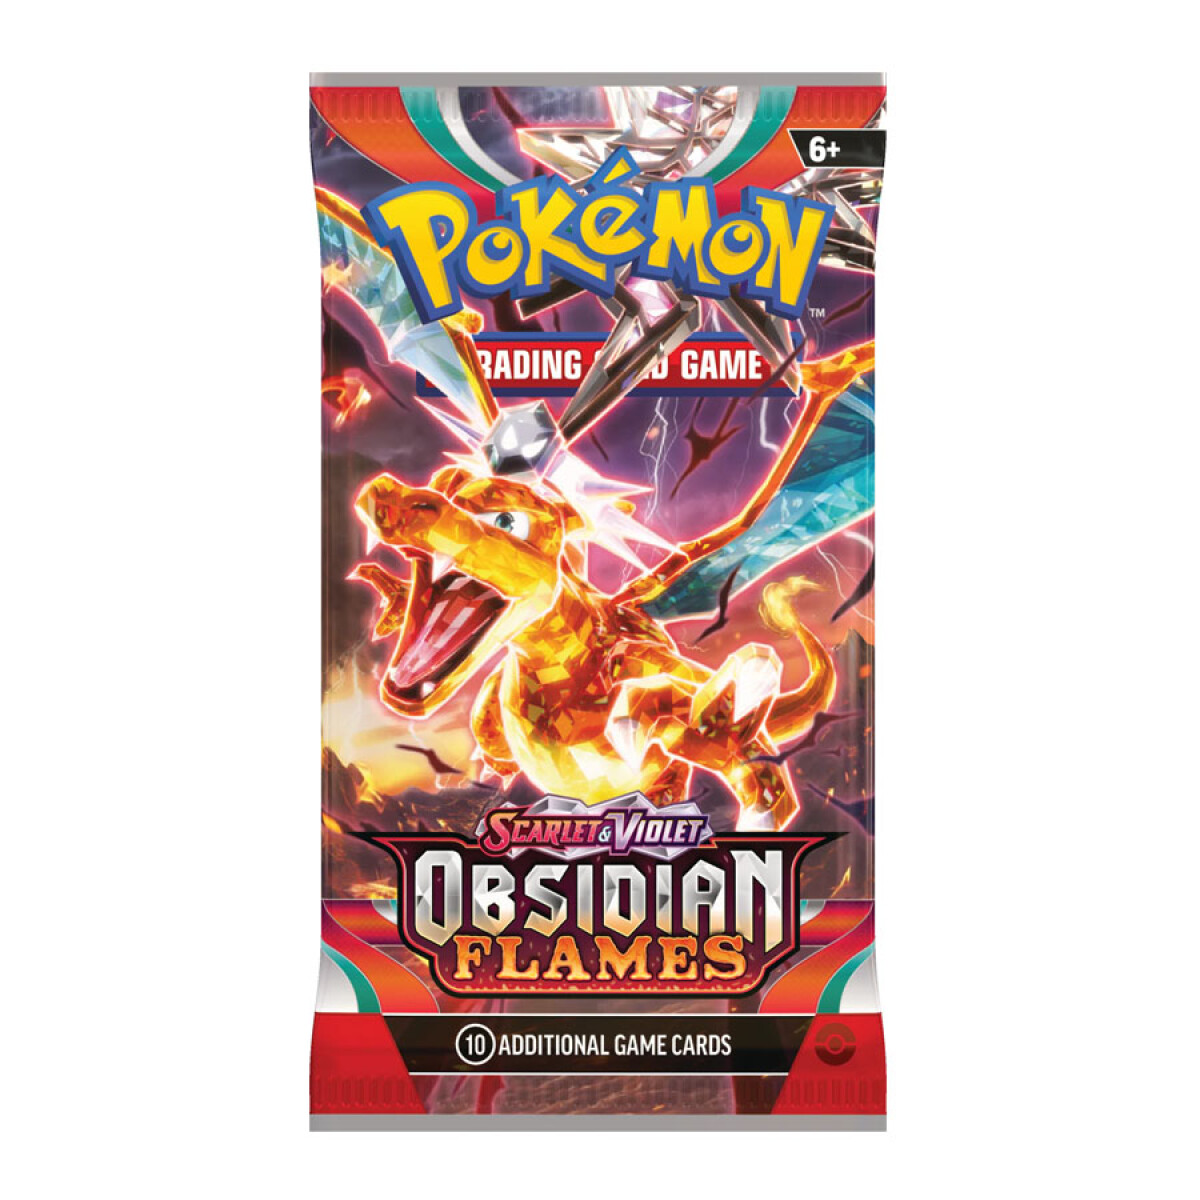 Pokemon TCG: Booster Scarlet & Violet - Obsidian Flames [Inglés] 